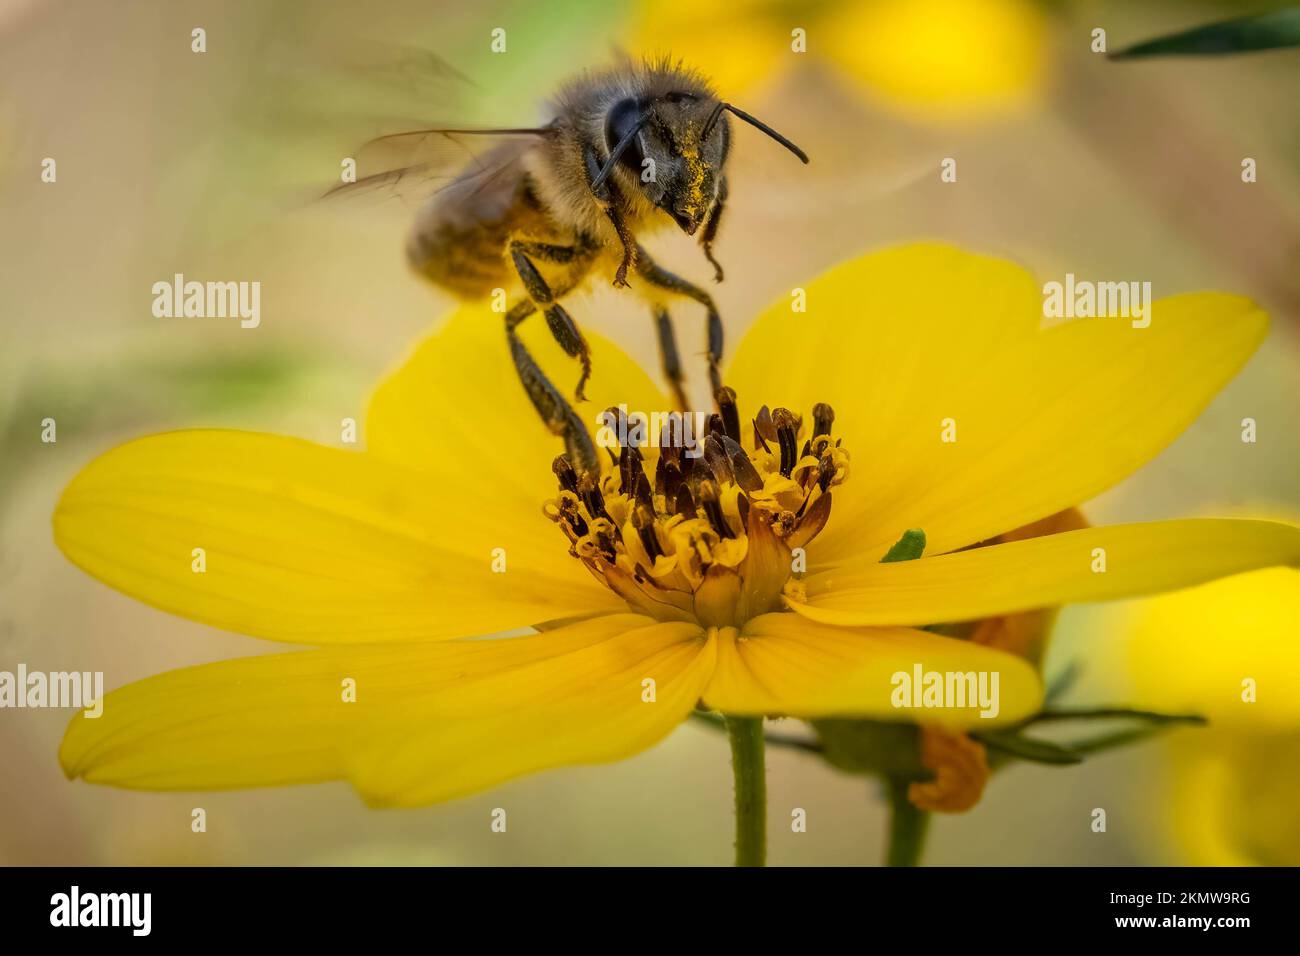 Une abeille occidentale (APIs mellifera) arrive pour un atterrissage sur une fleur jaune. Raleigh, Caroline du Nord. Banque D'Images